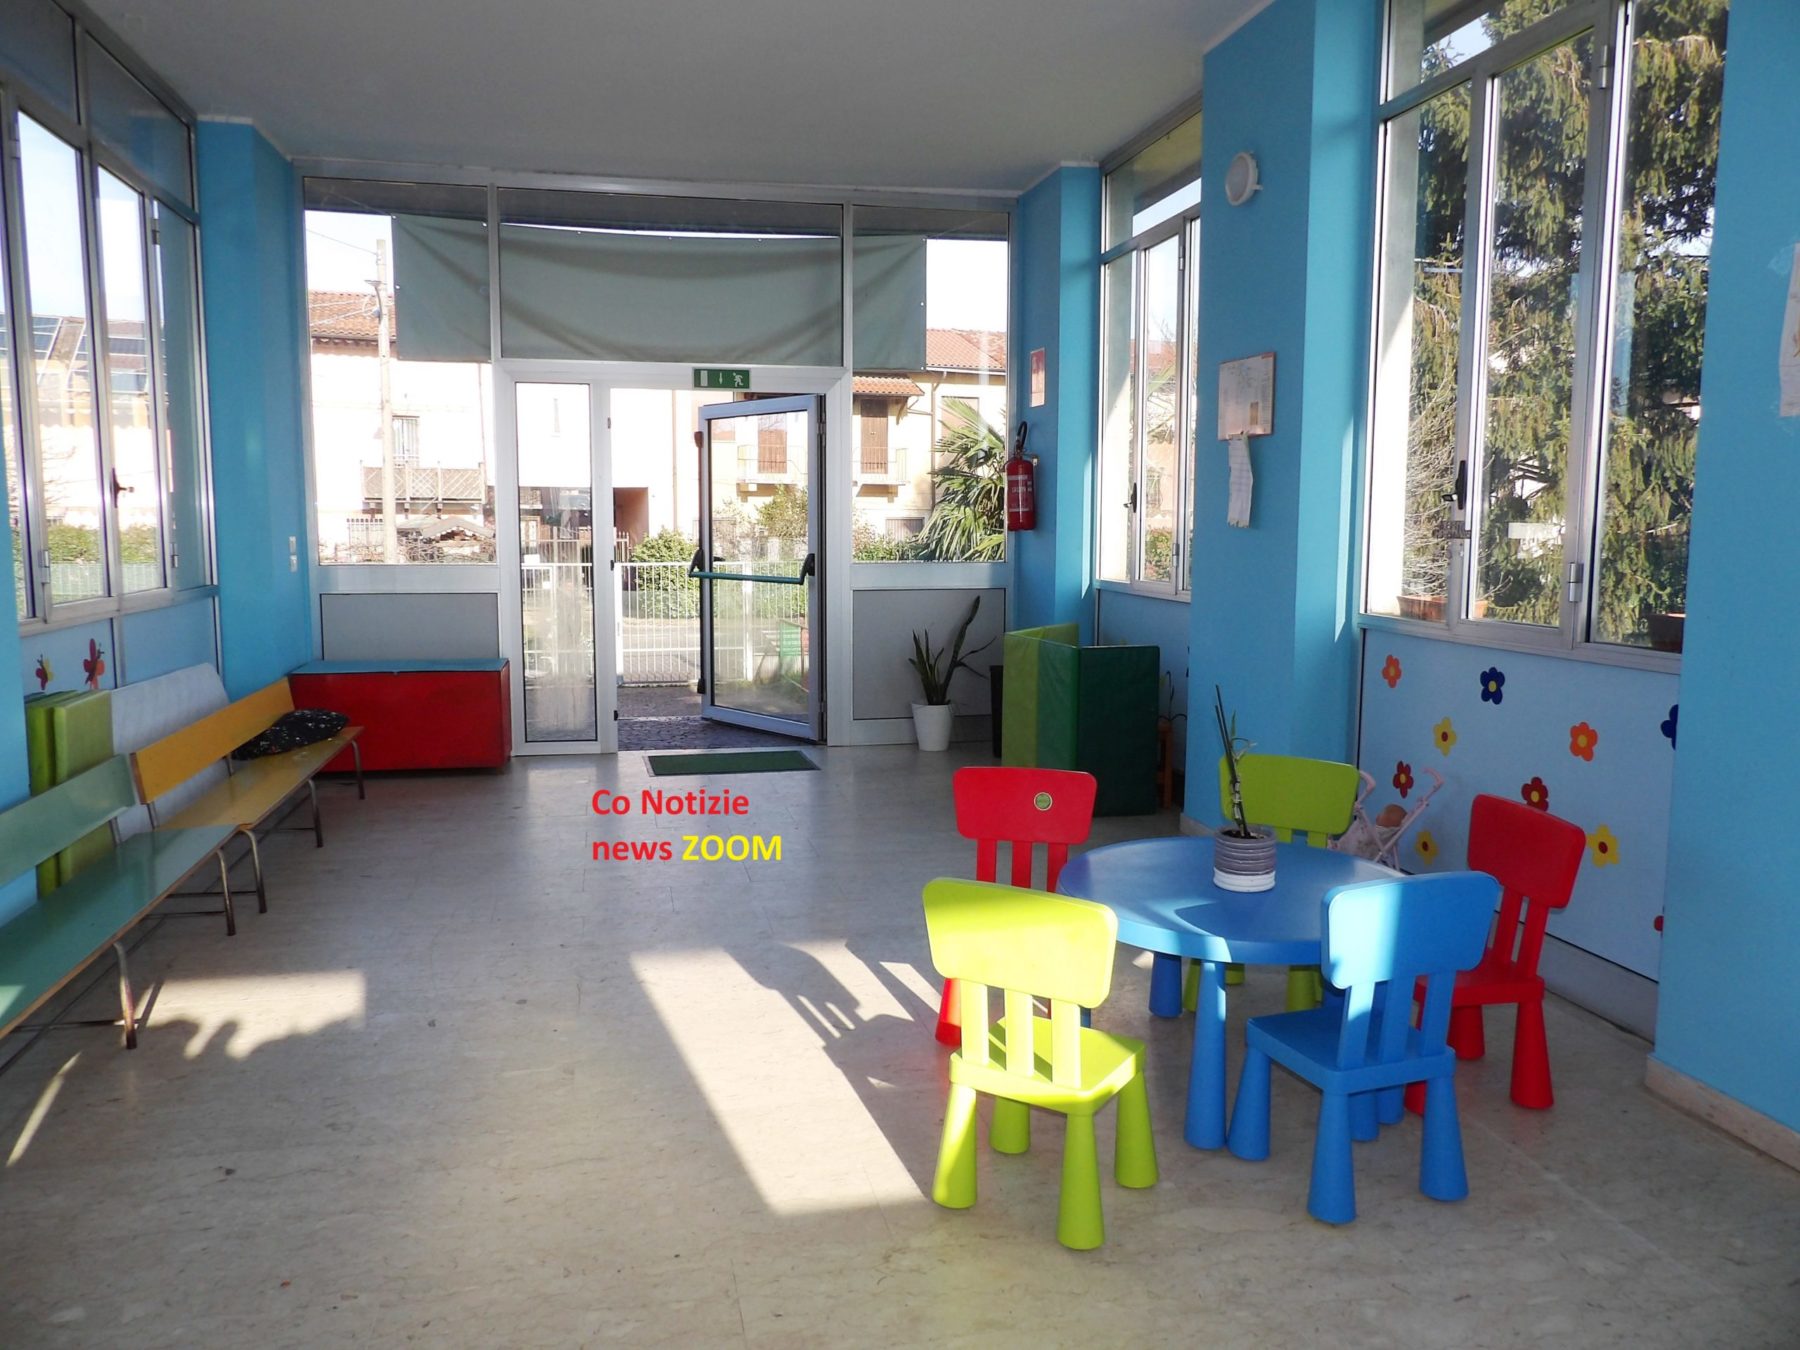 . Spazio Montessori, Cerello di Corbetta: riflessioni per la didattica dell’infanzia nei tempi post Covid-19 - 22/04/2020